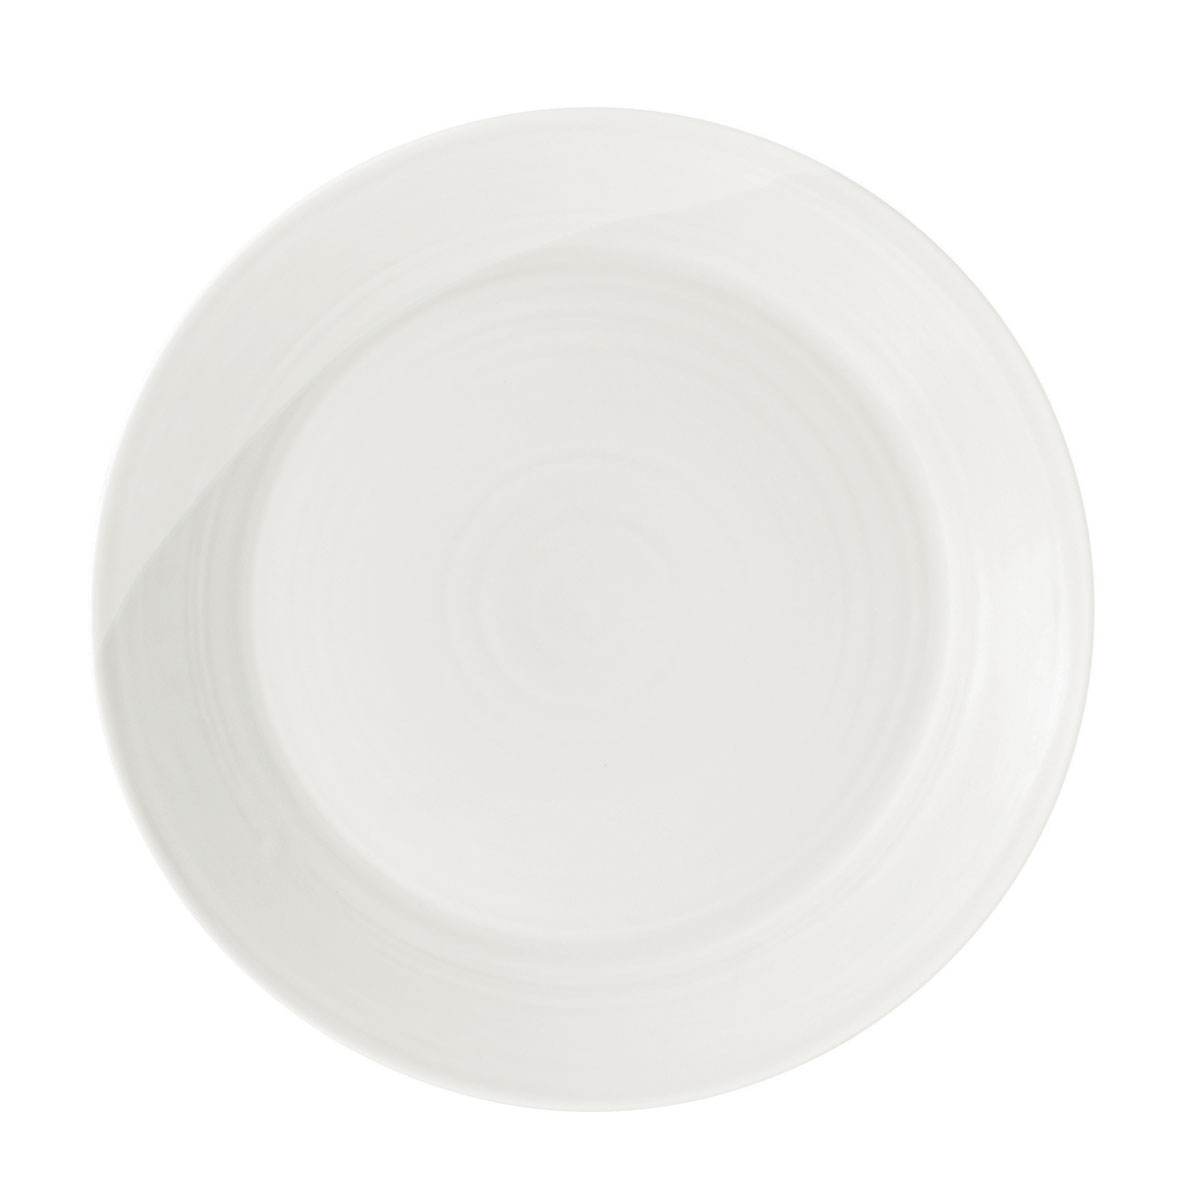 Royal Doulton 1815 White Dinner Plate 11.4"